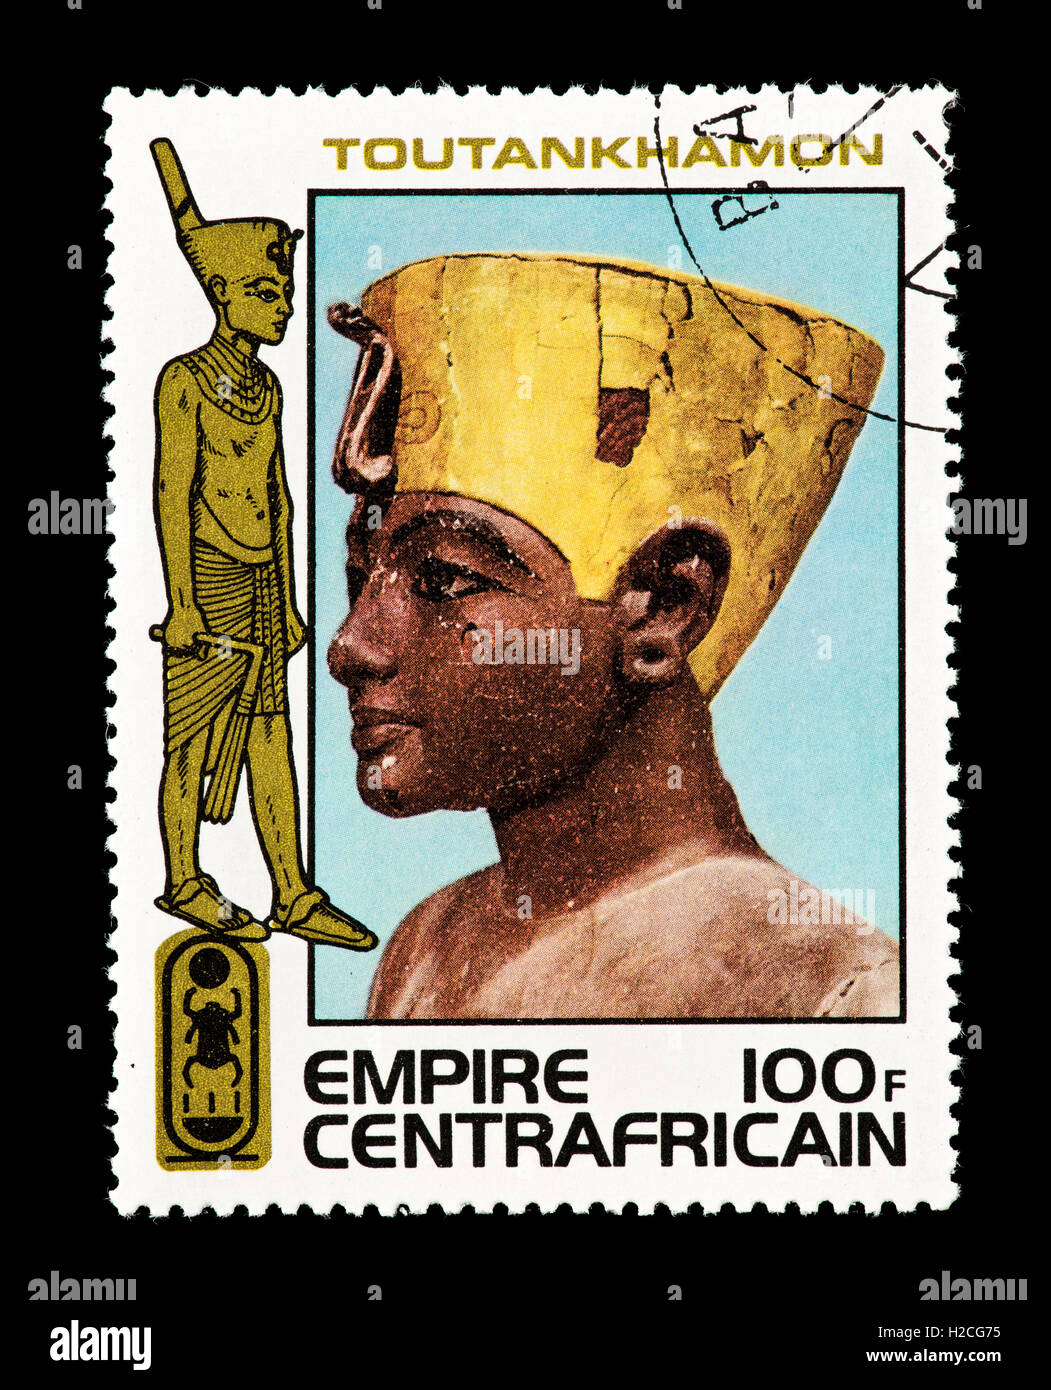 Timbre-poste de la République centrafricaine qui représente le roi portant des couronnes de Haute et Basse Égypte à partir de la tombe de Toutankhamon. Banque D'Images